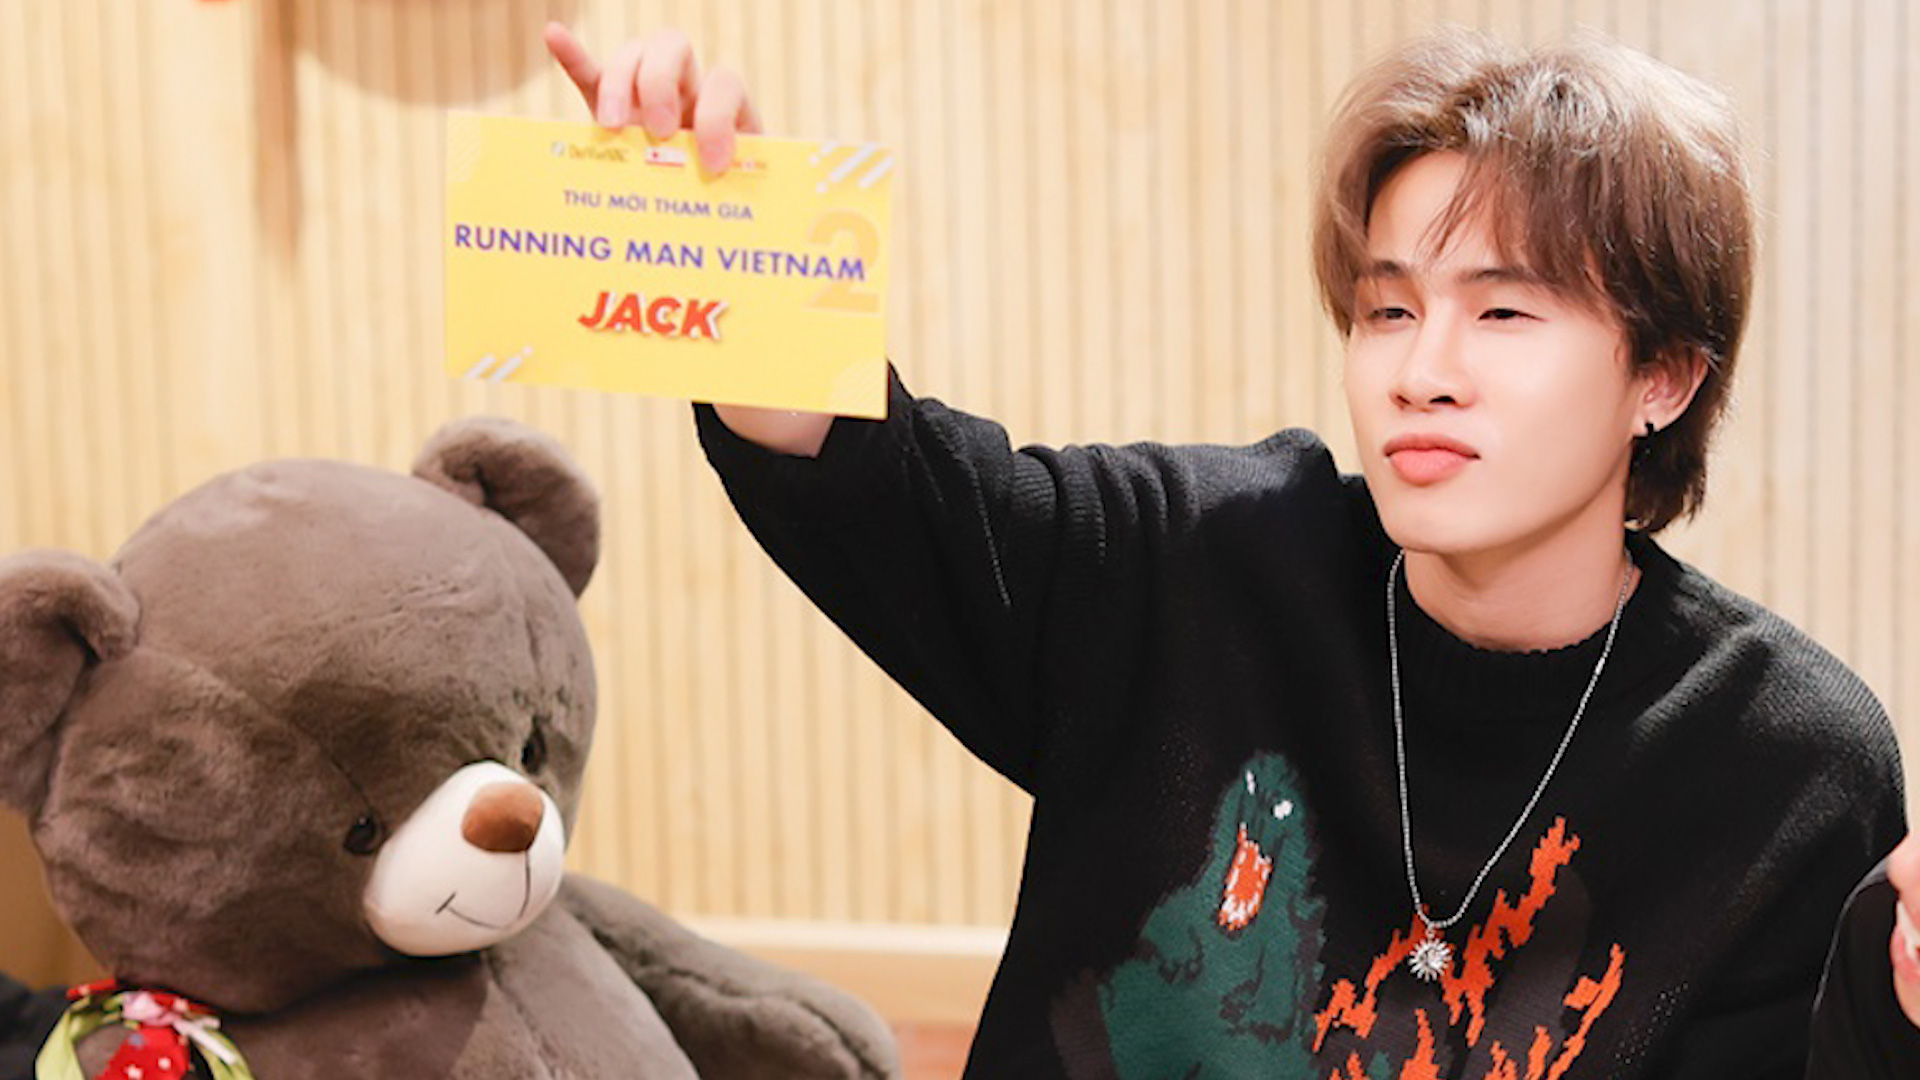 Fan lo lắng, sợ Jack không ăn uống được khi sang Hàn Quốc quay Running Man